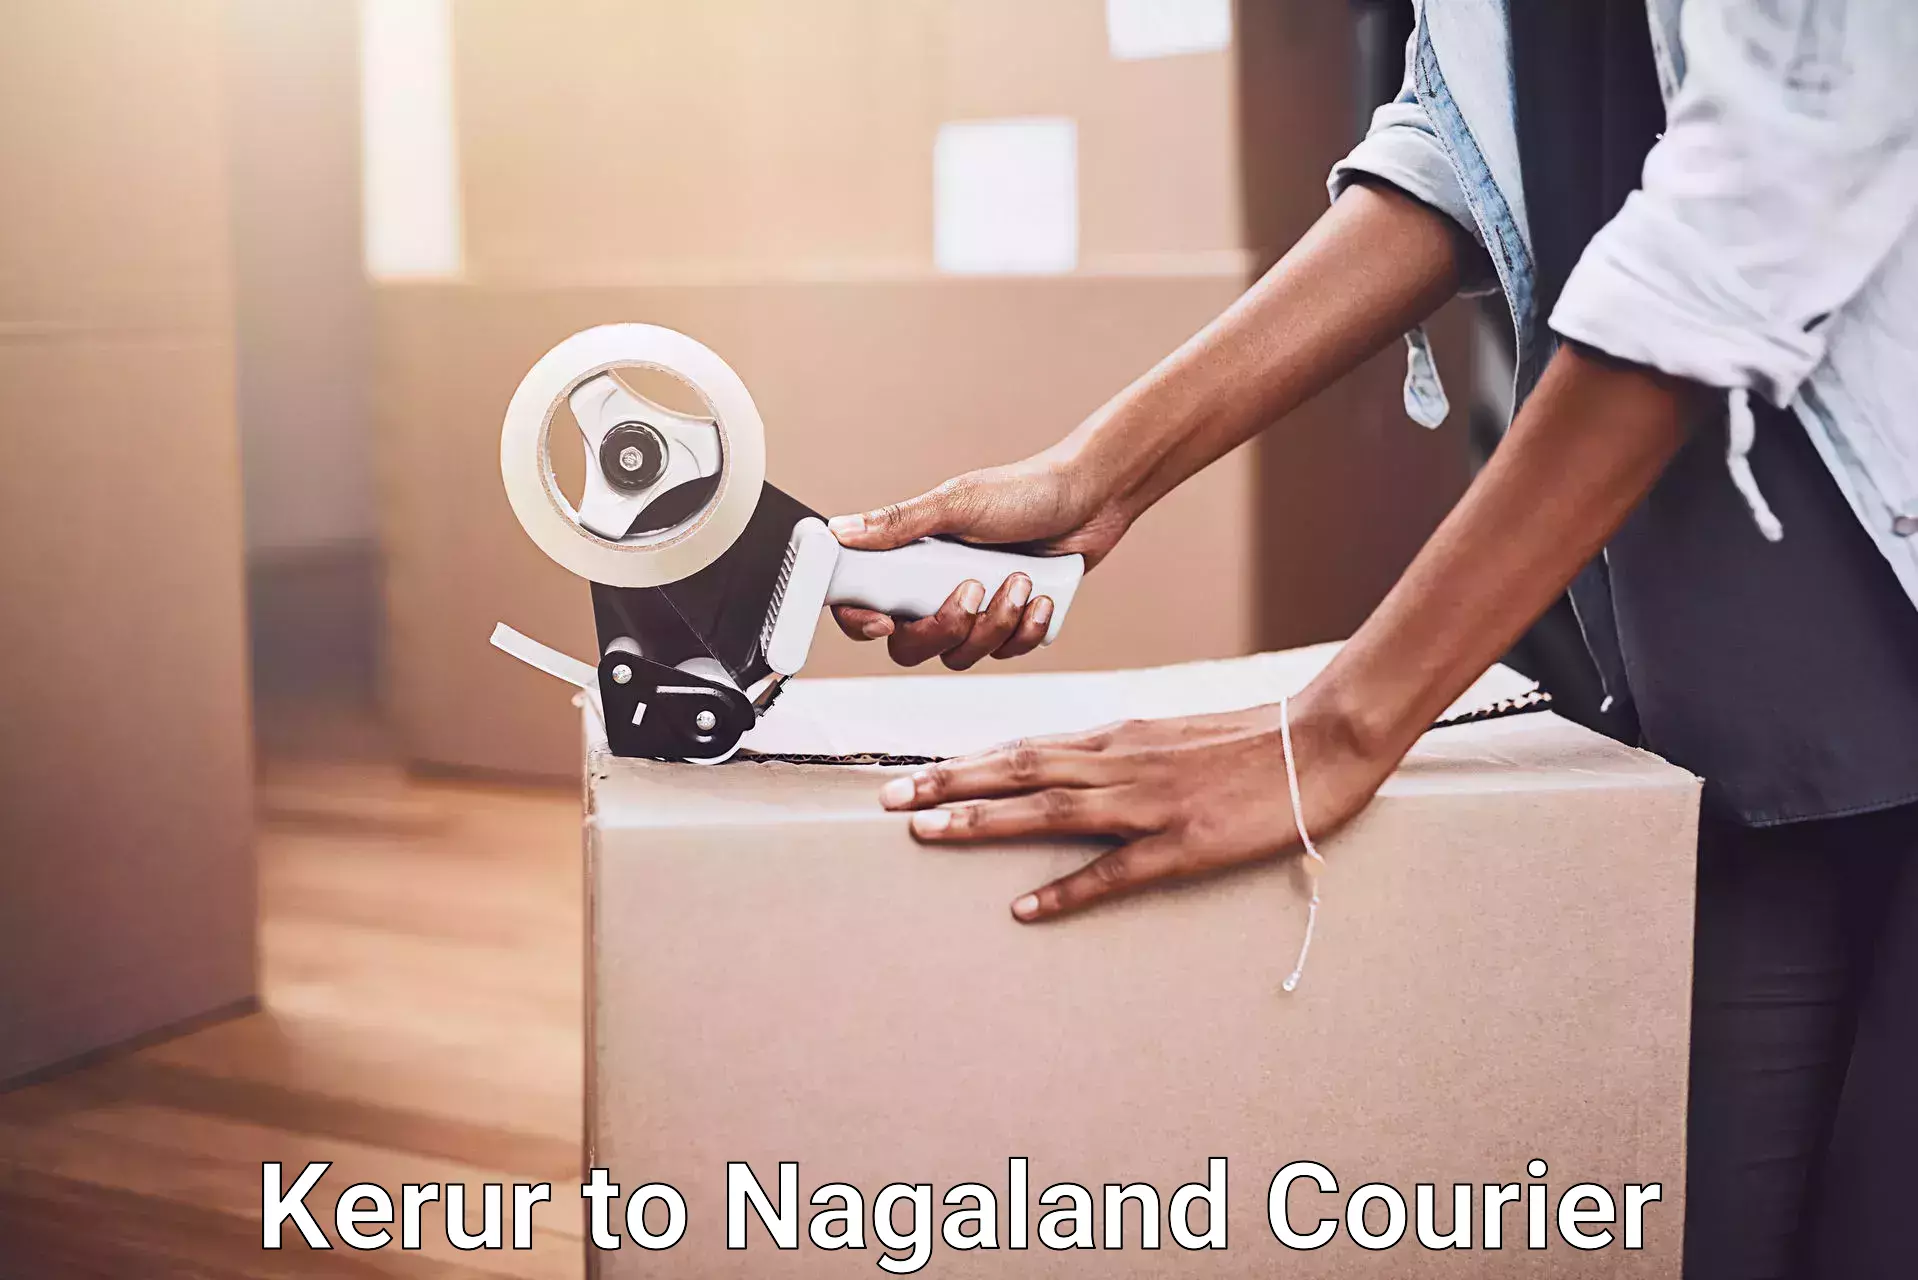 Expert furniture movers Kerur to Nagaland